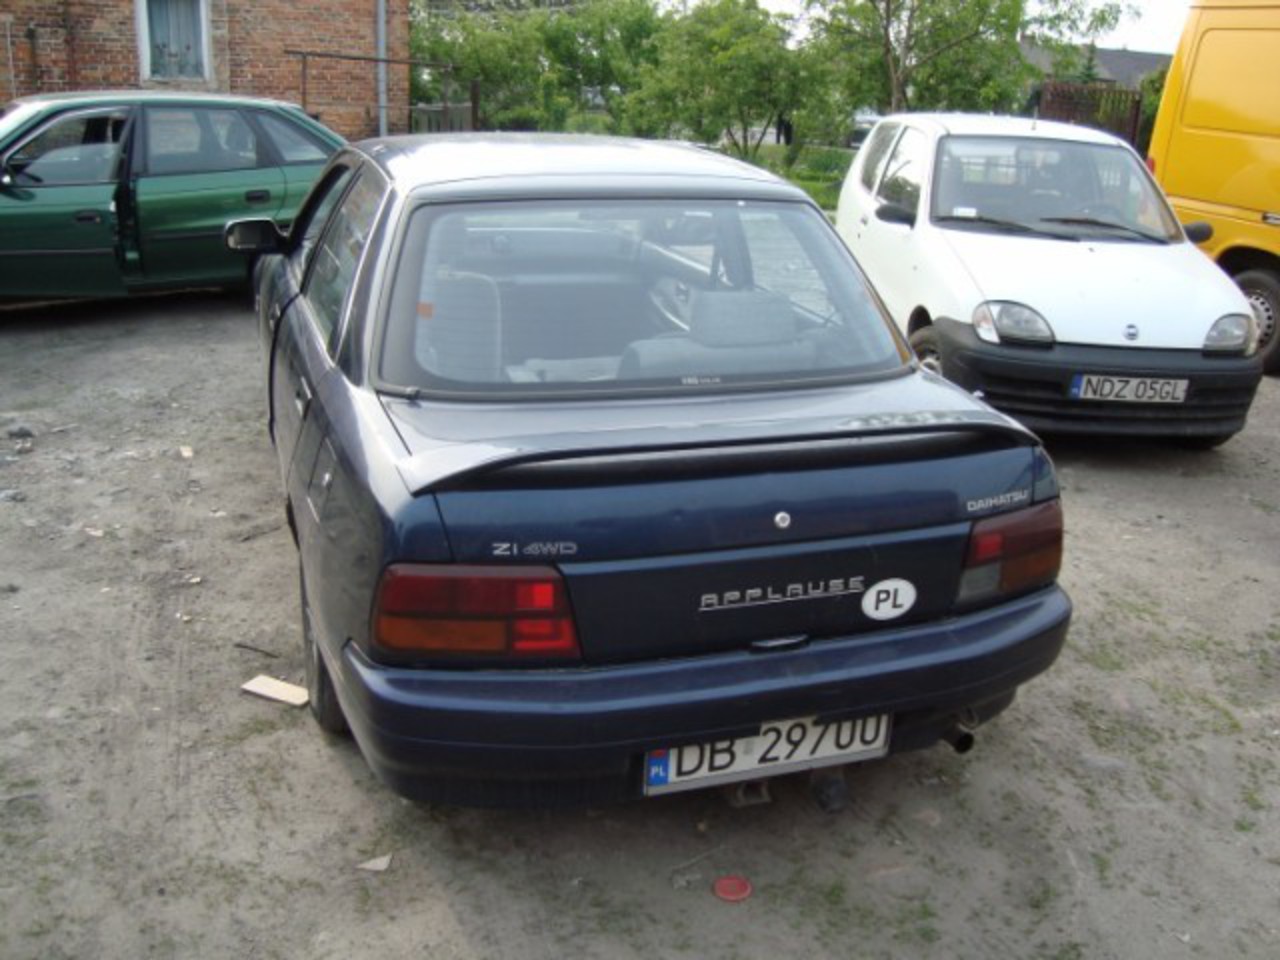 1993 Daihatsu Applause "Dziad" - Warszawa, owned by izdebo Page:1 ...